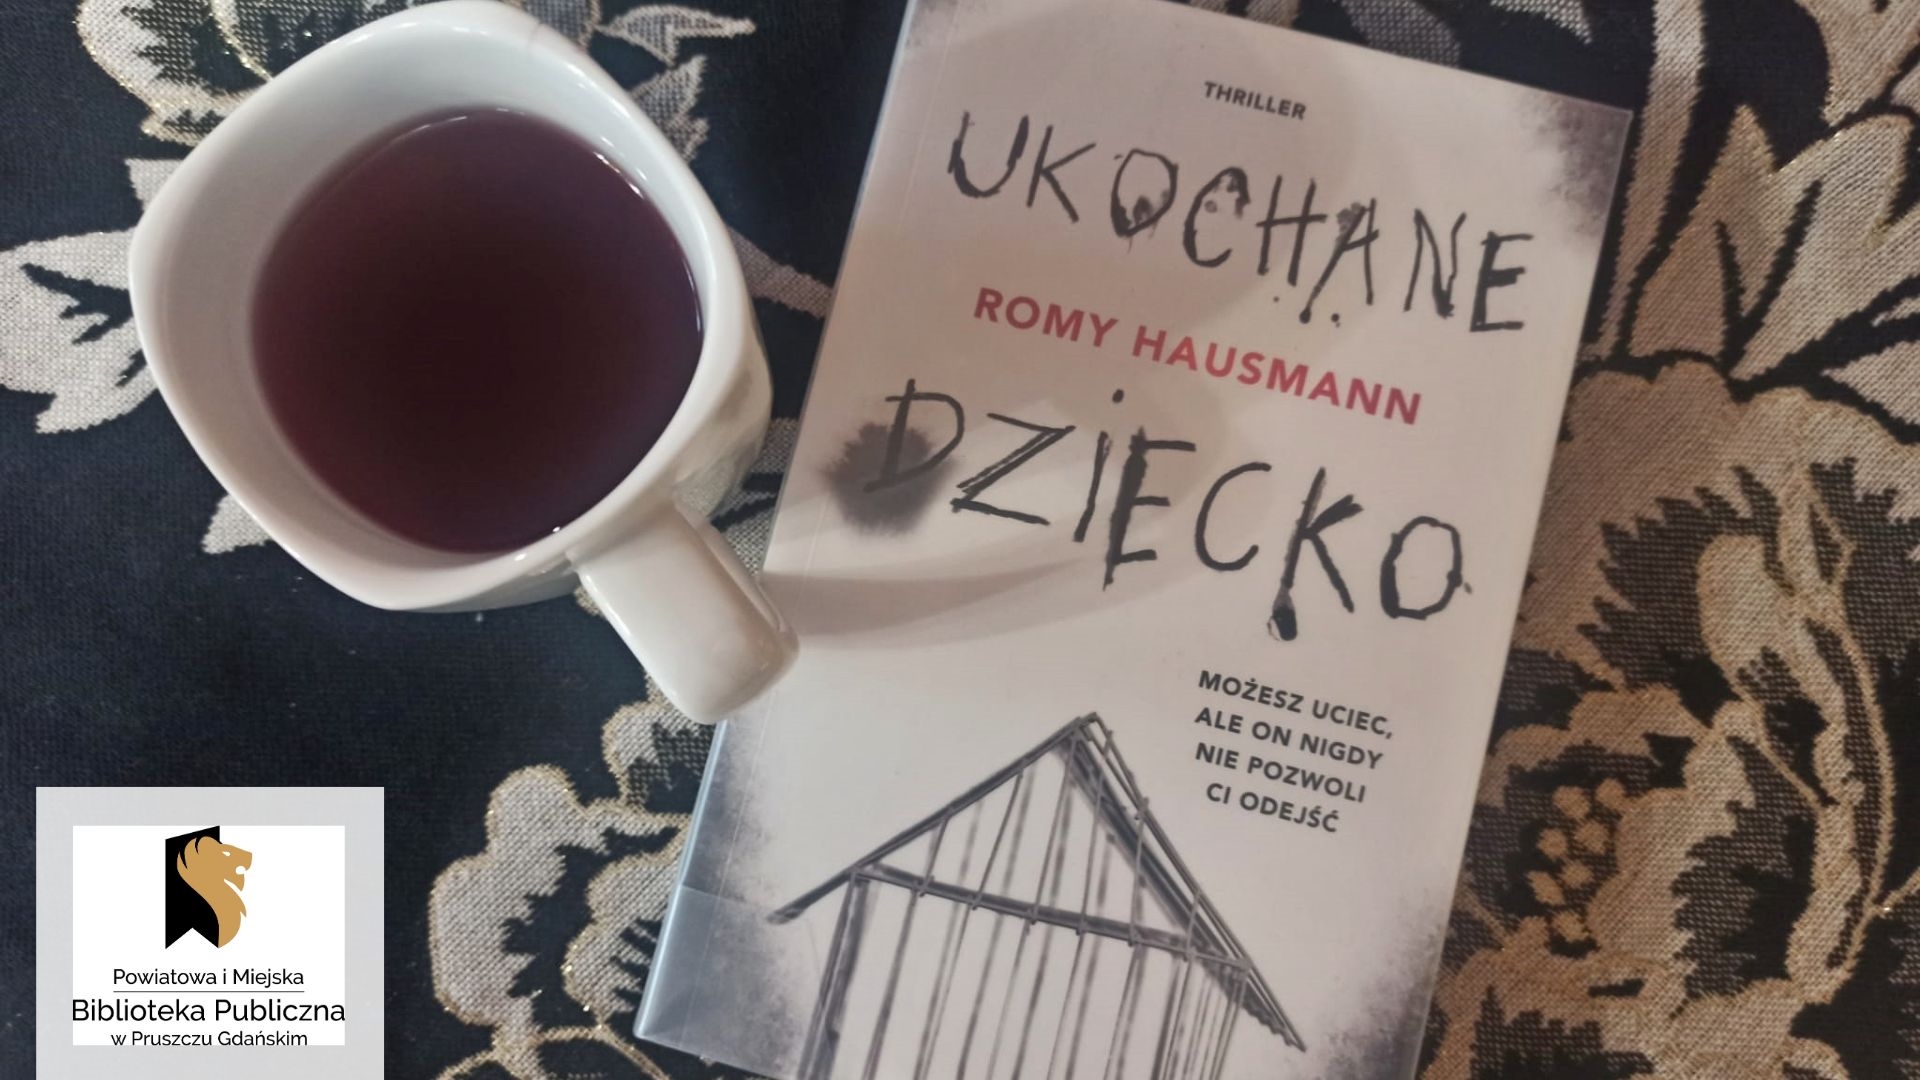 Książka — thriller Romy Haussman pt. Ukochane dziecko. Obok filiżanka z napojem.